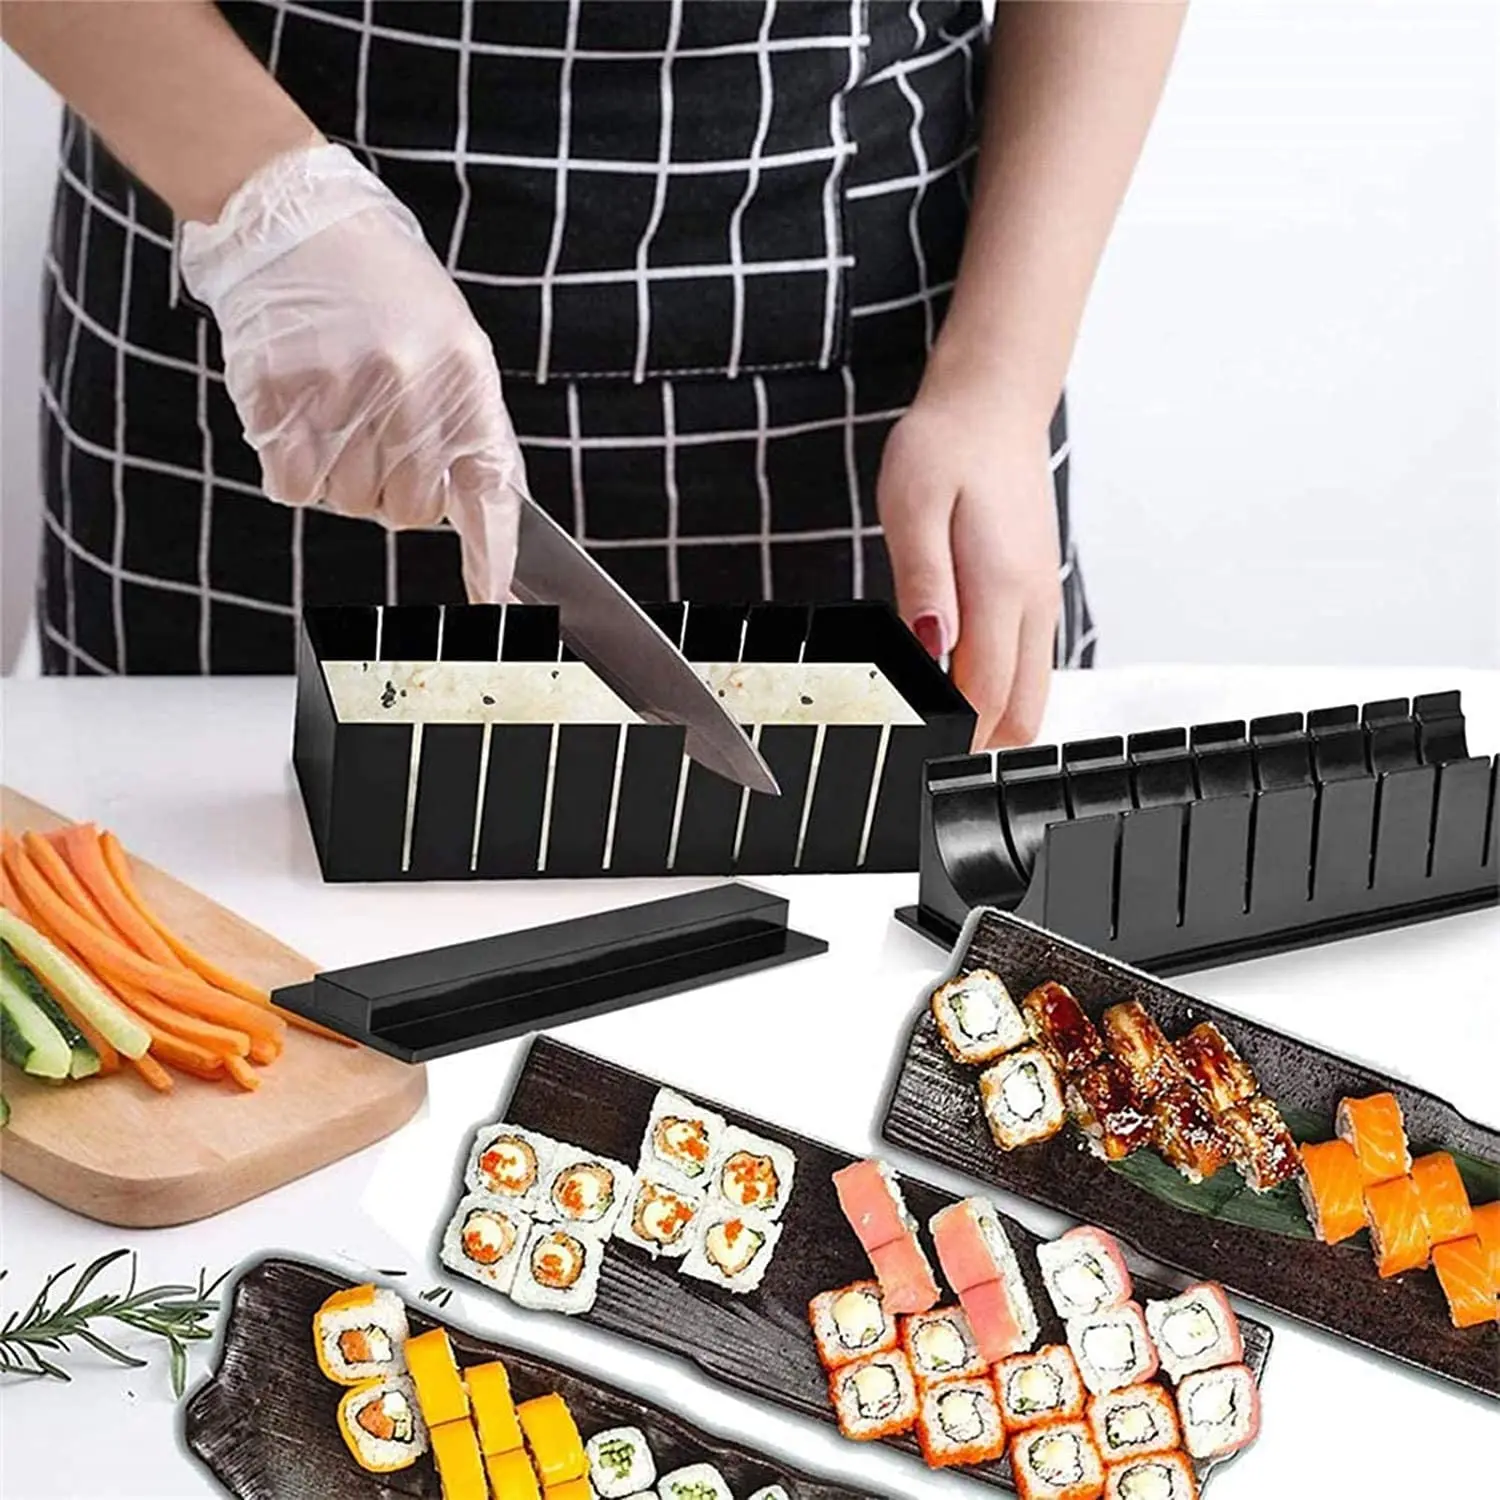 Как делать суши из набора для суши фото 6